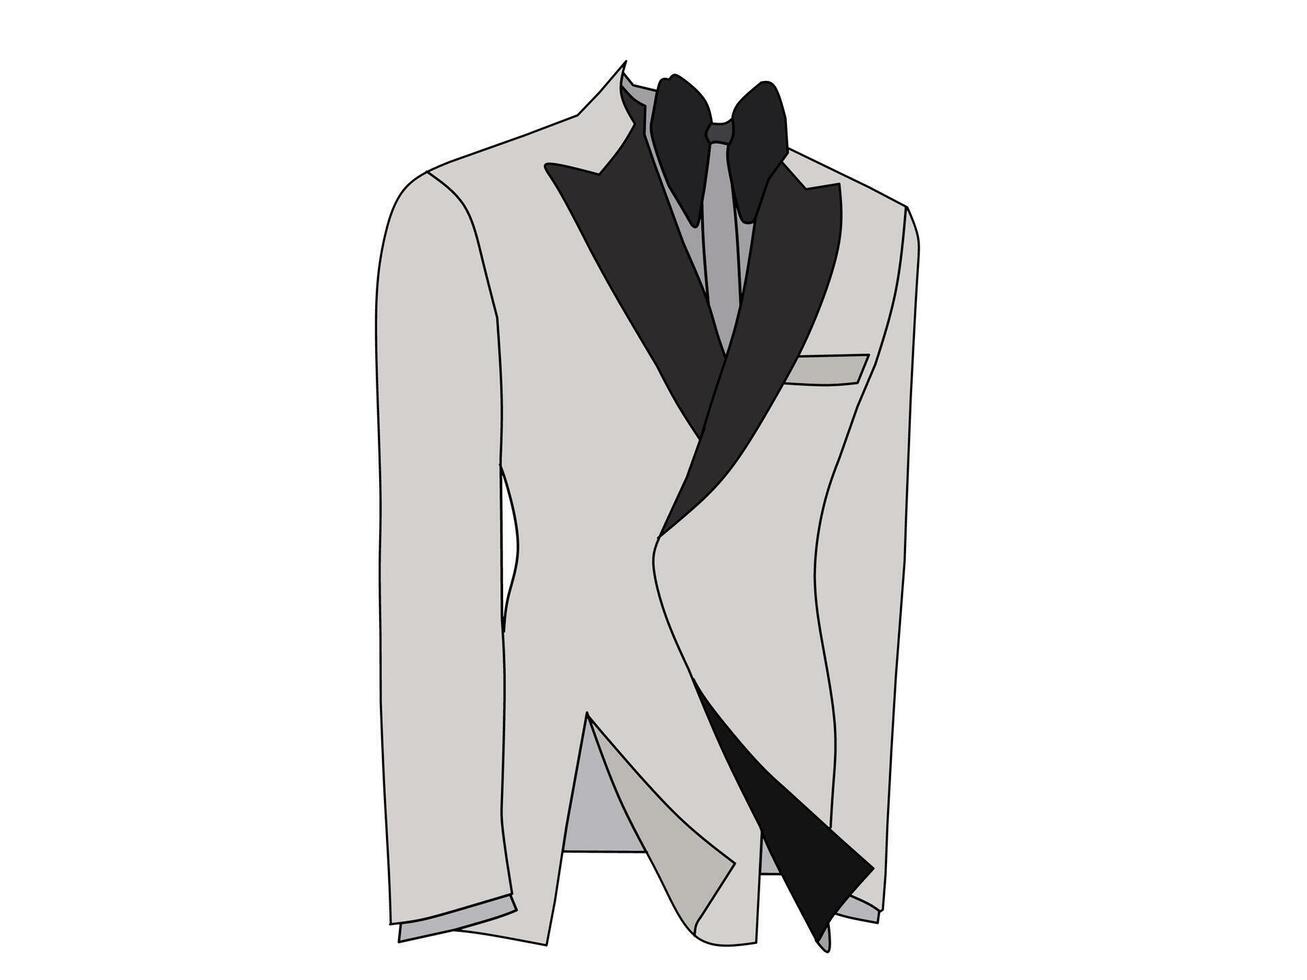 Vektor Illustration von formal tragen im Weiß grau Farbe auf Weiß Hintergrund. das Konzept von Geschäft und Arbeit Kleidung thematisch Mode Themen.